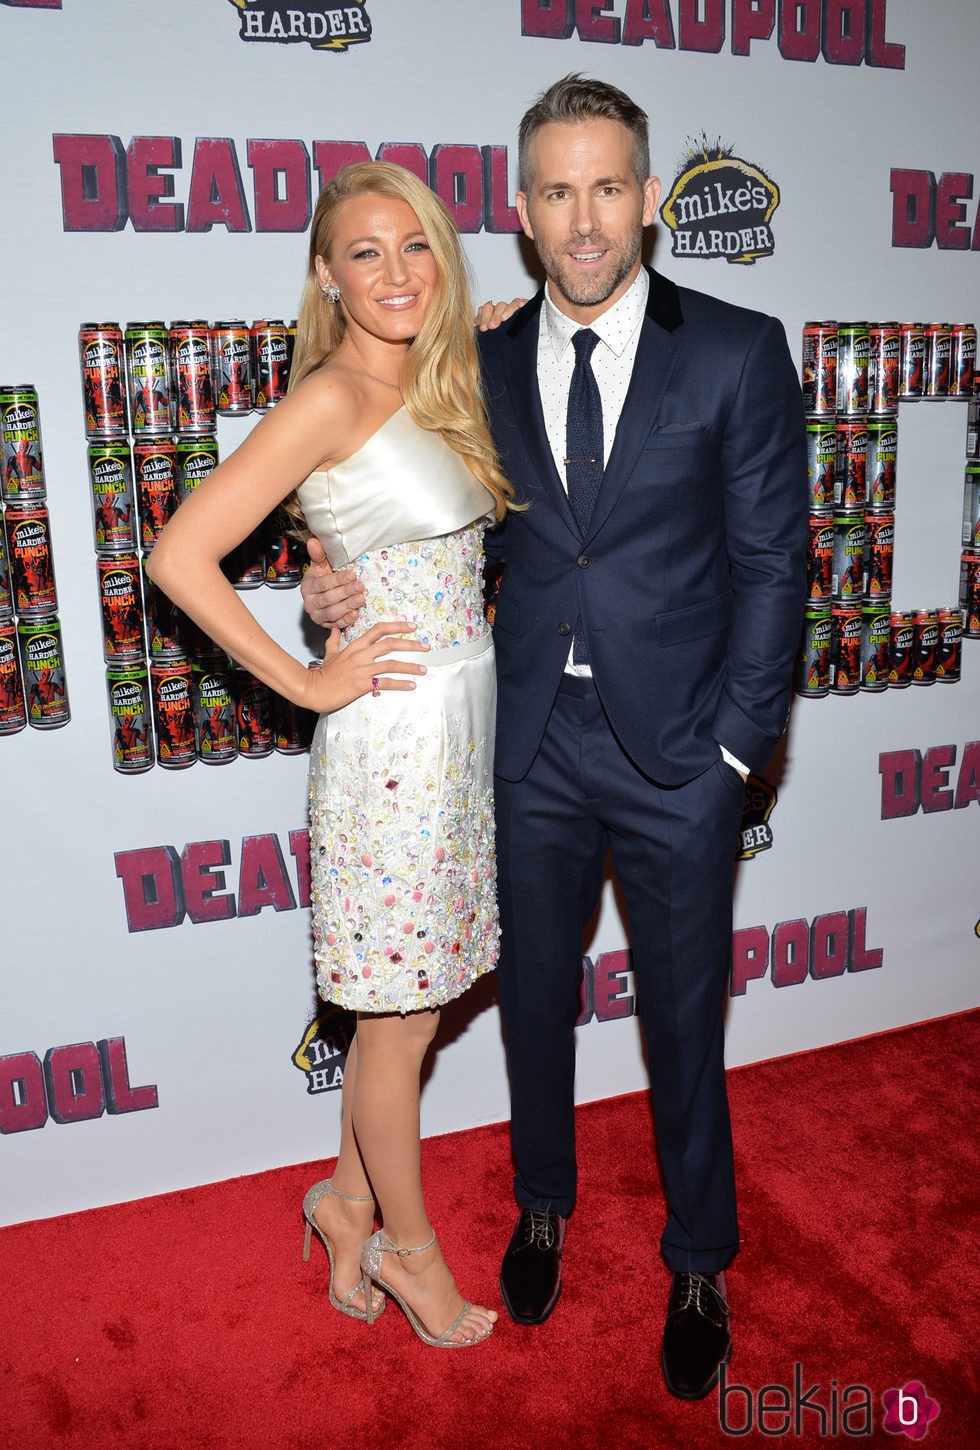 Blake Lively y Ryan Reynolds, posan juntos por primera vez tras su paternidad en el estreno de 'Deadpool'